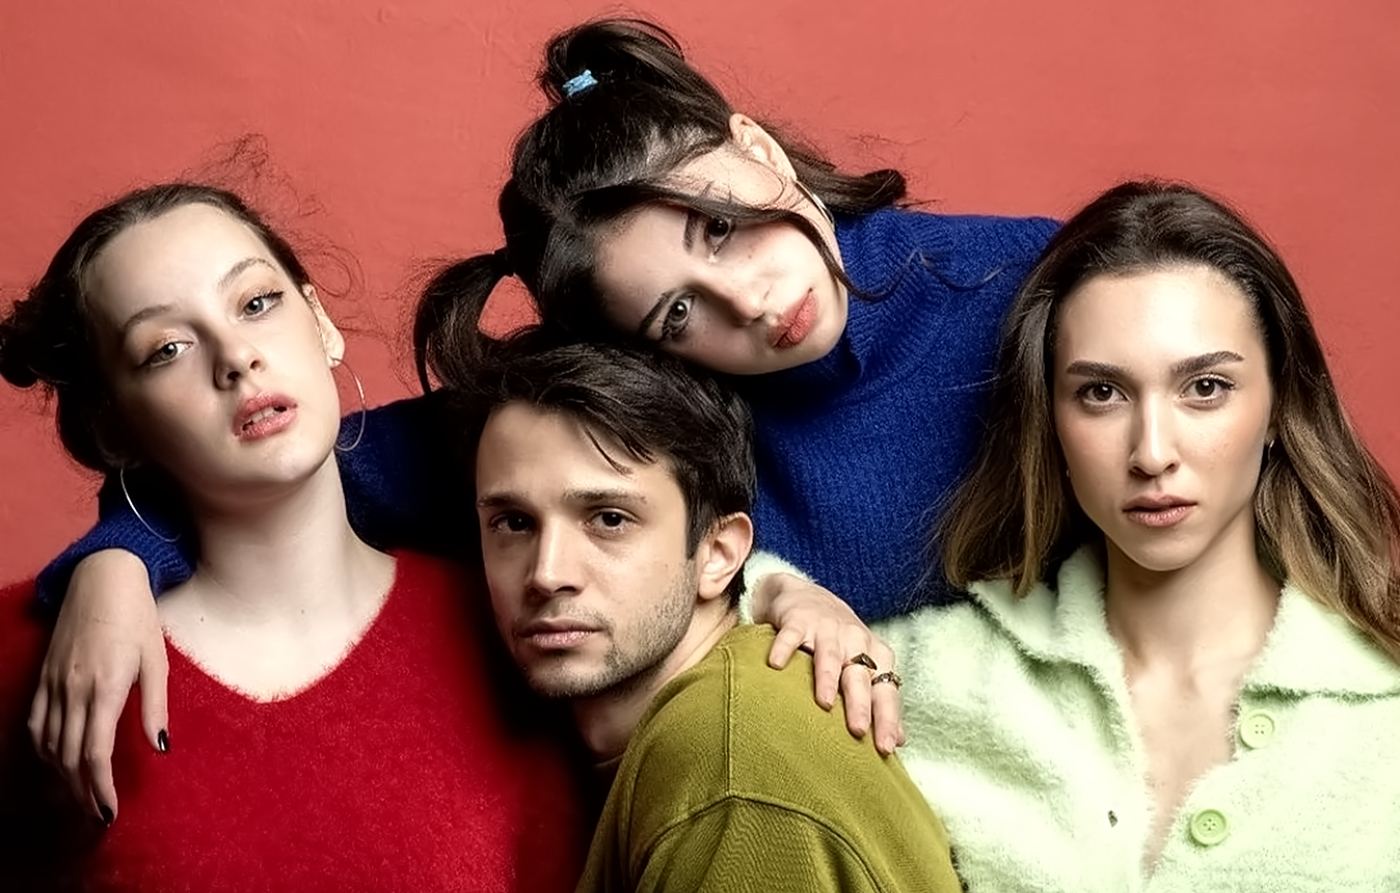 Tuğçe, Parla, Çinar y Merve son los actores más jóvenes de Secretos de familia